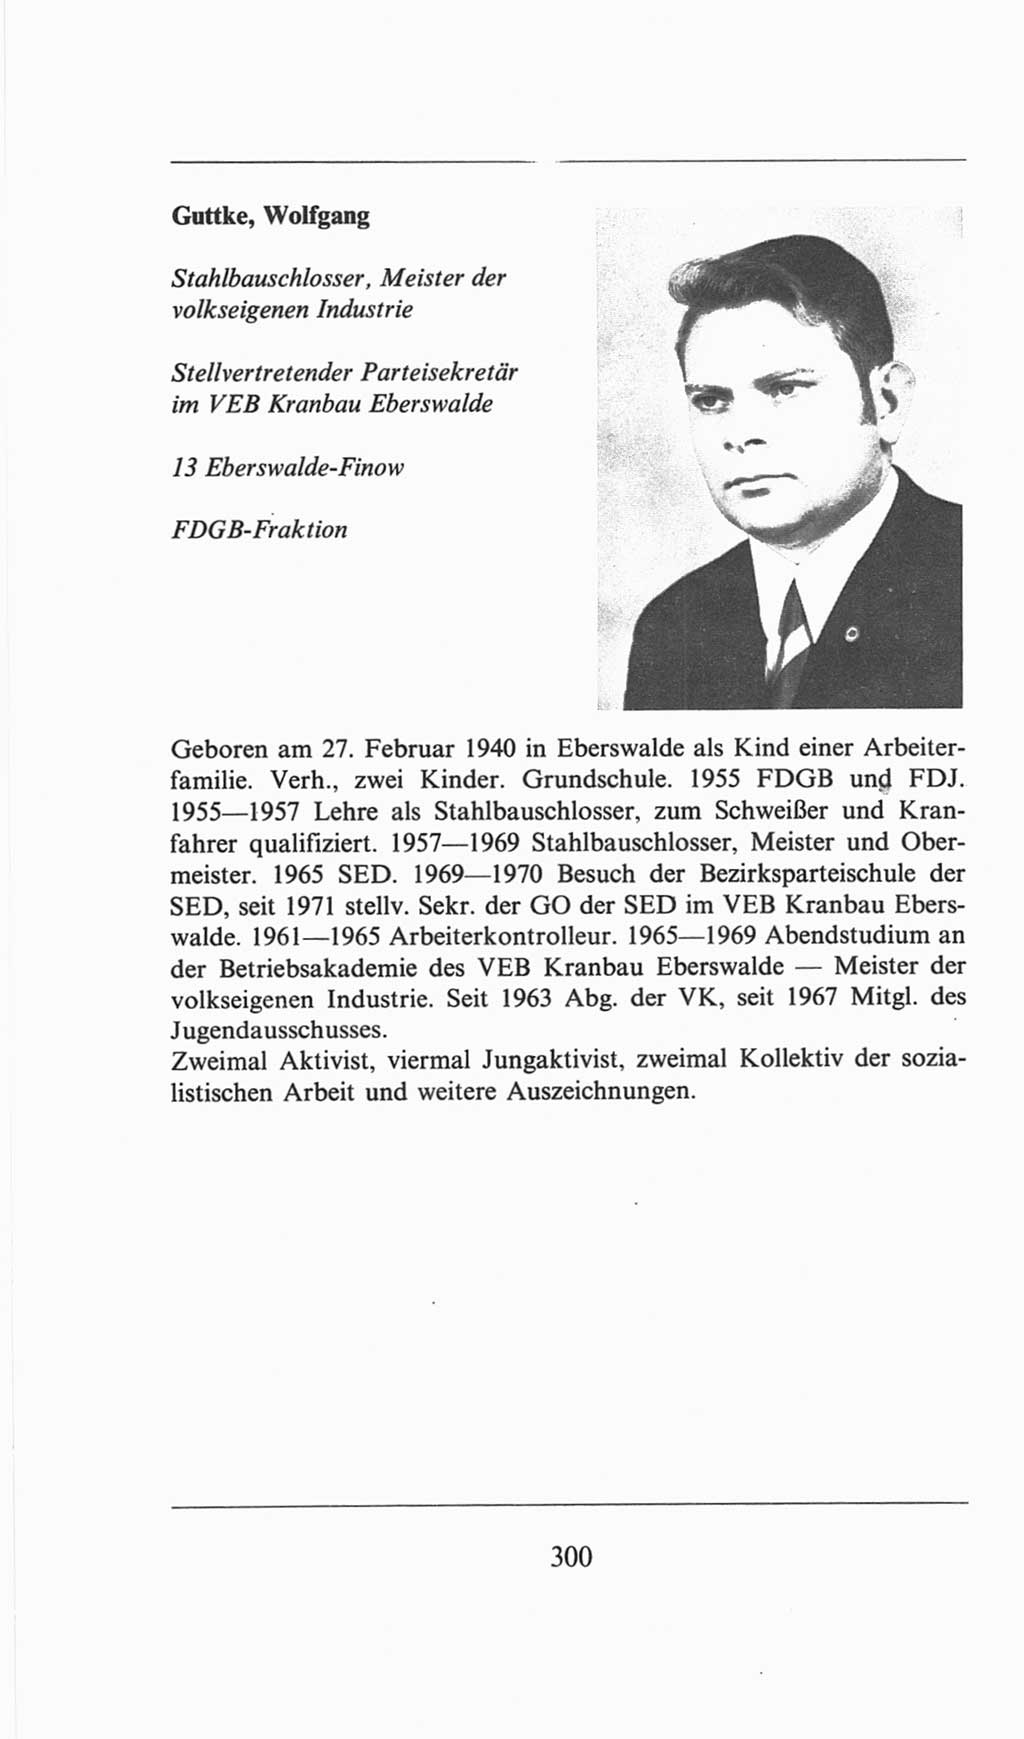 Volkskammer (VK) der Deutschen Demokratischen Republik (DDR), 6. Wahlperiode 1971-1976, Seite 300 (VK. DDR 6. WP. 1971-1976, S. 300)